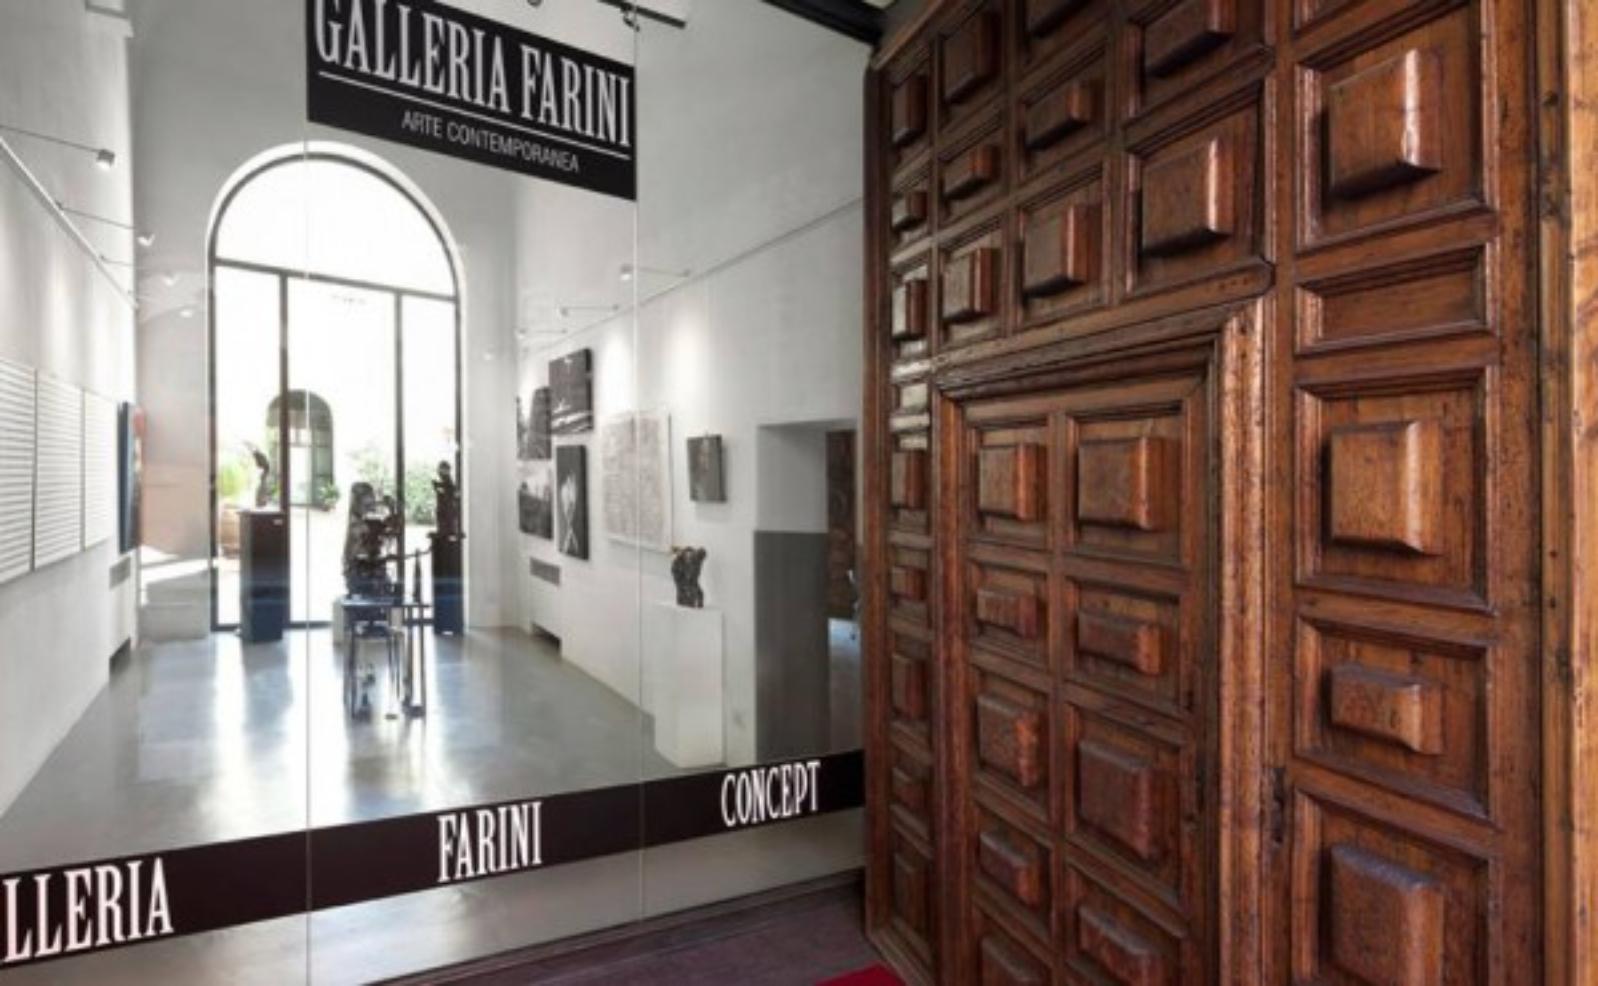 Galleria Farini Concept